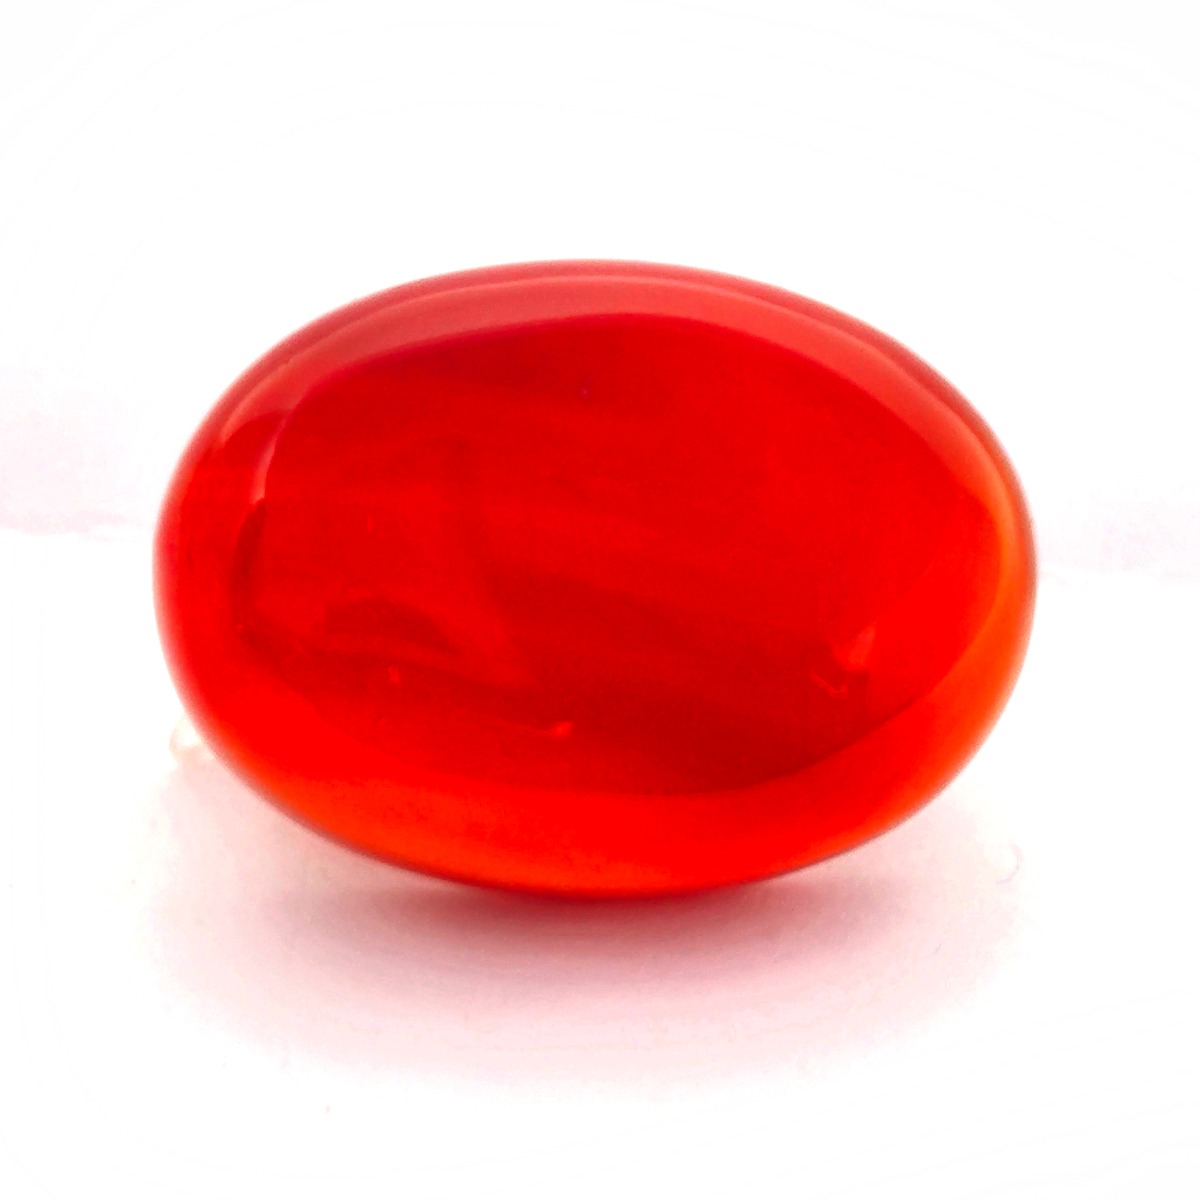 30.74 Carat Natural Red Agate (Sulemani Hakik) Gemstone